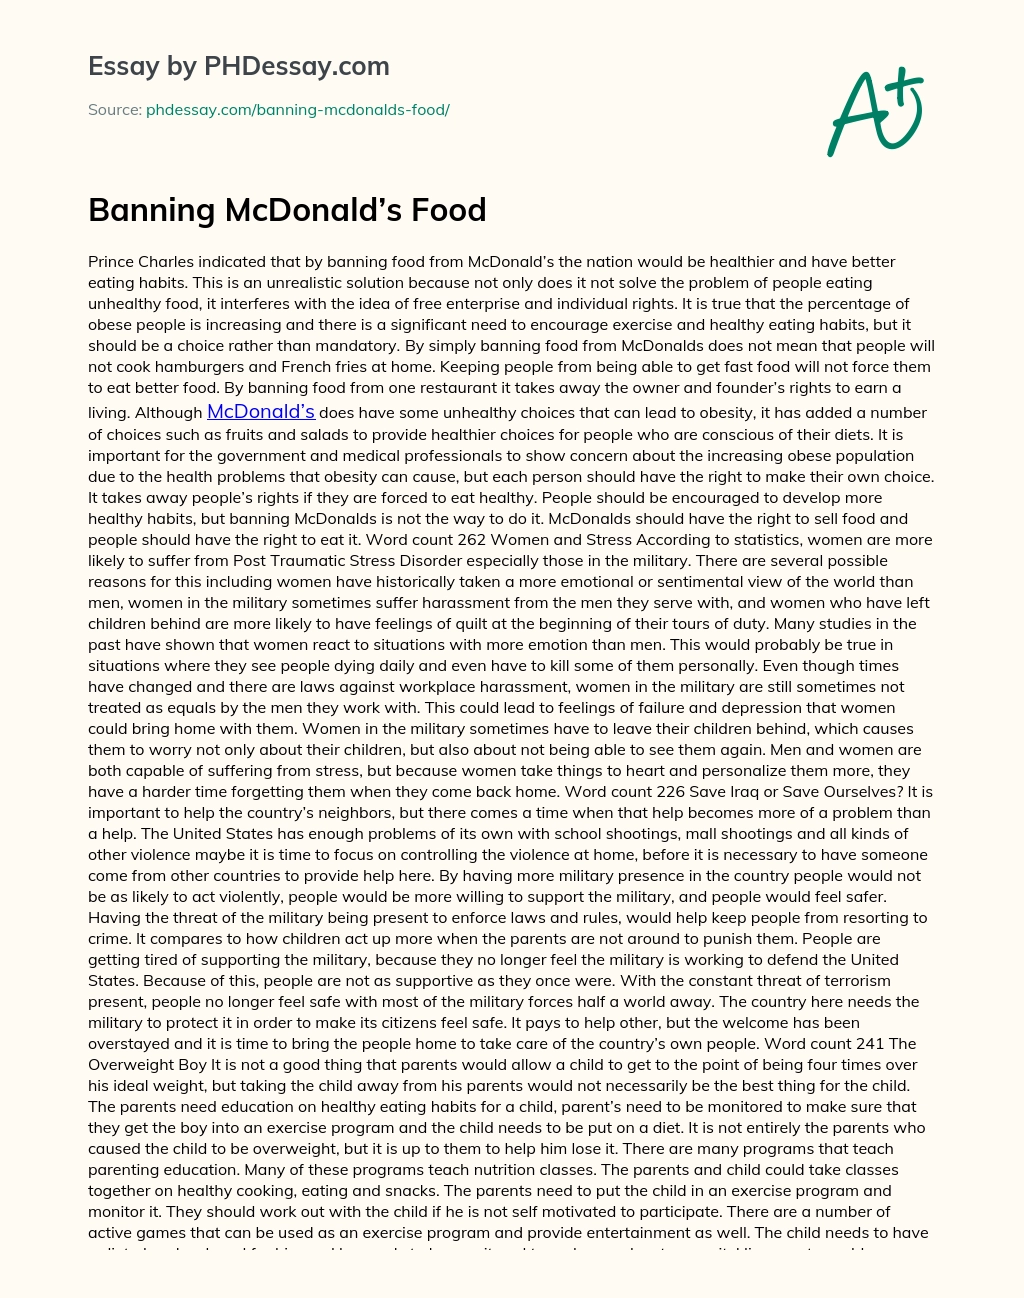 Banning McDonald’s Food essay